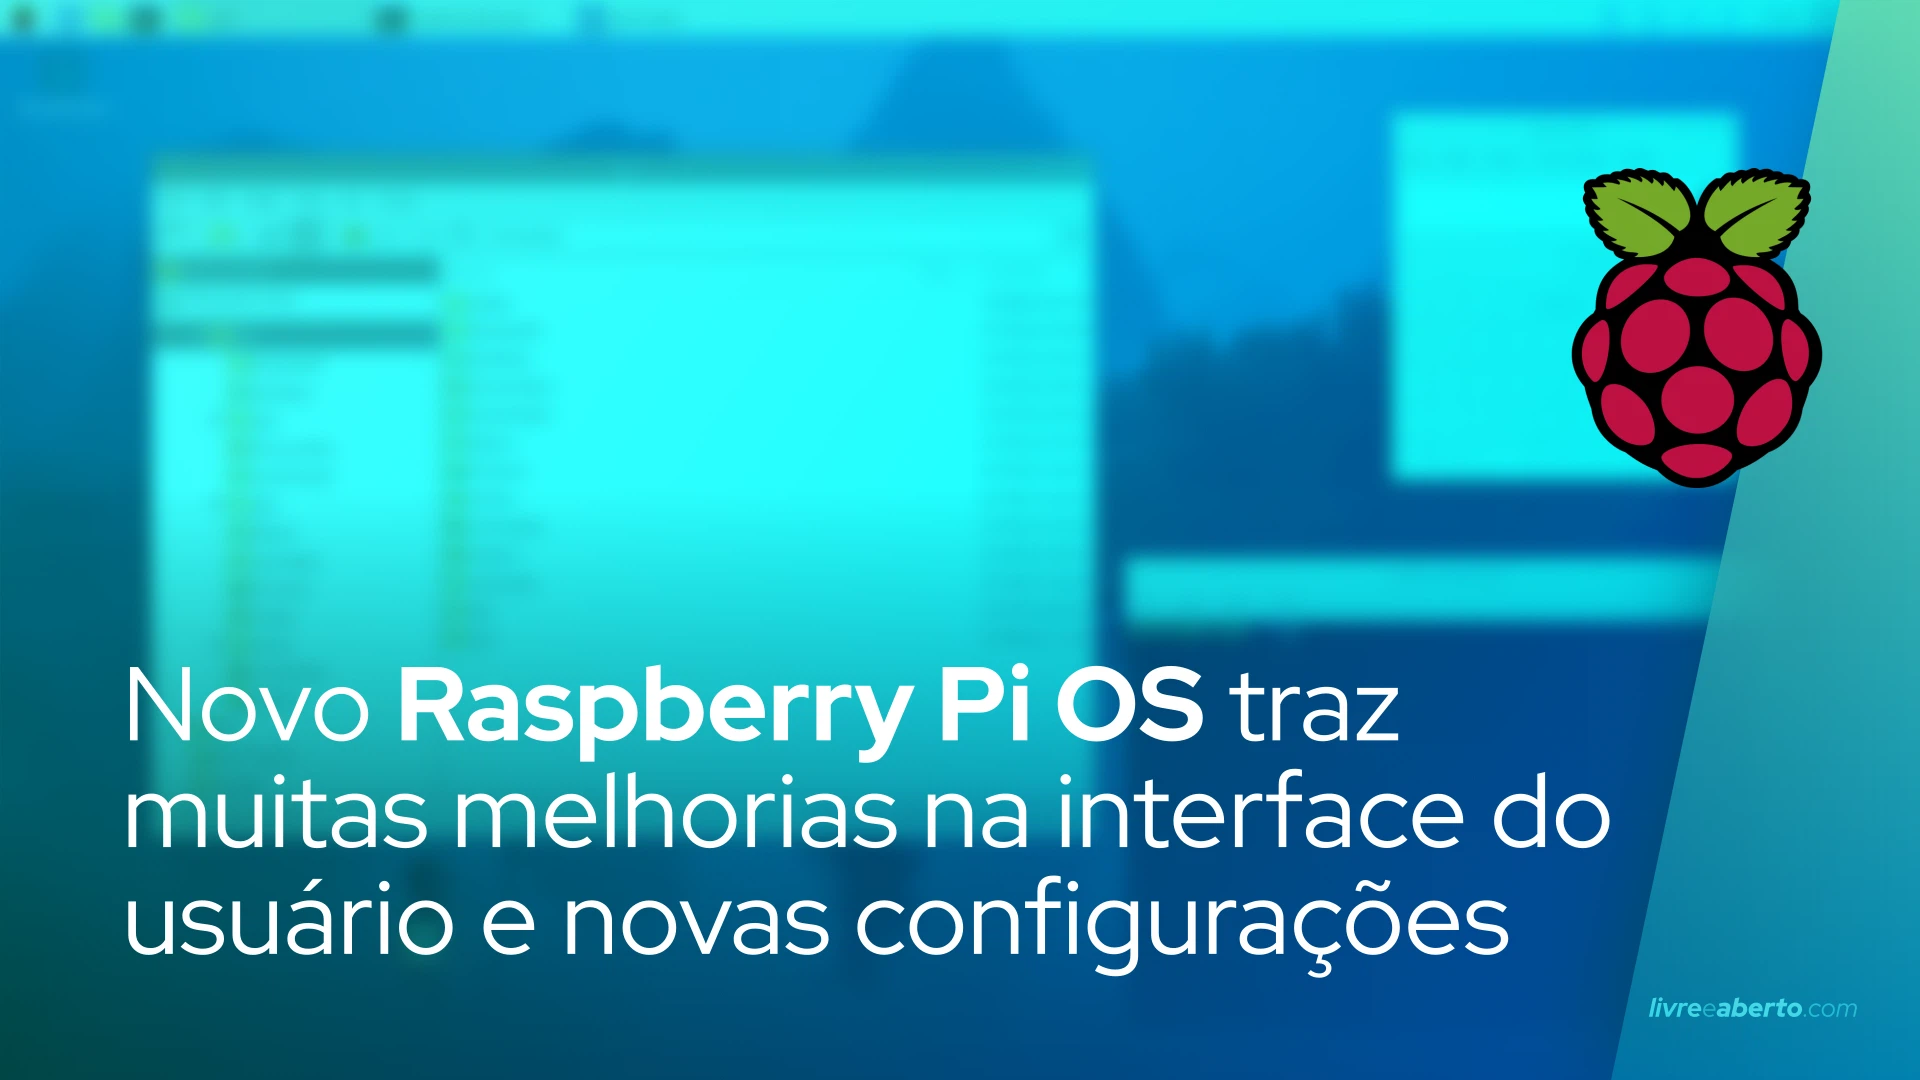 Nova versão do Raspberry Pi OS traz muitas melhorias na interface do usuário e novas configurações